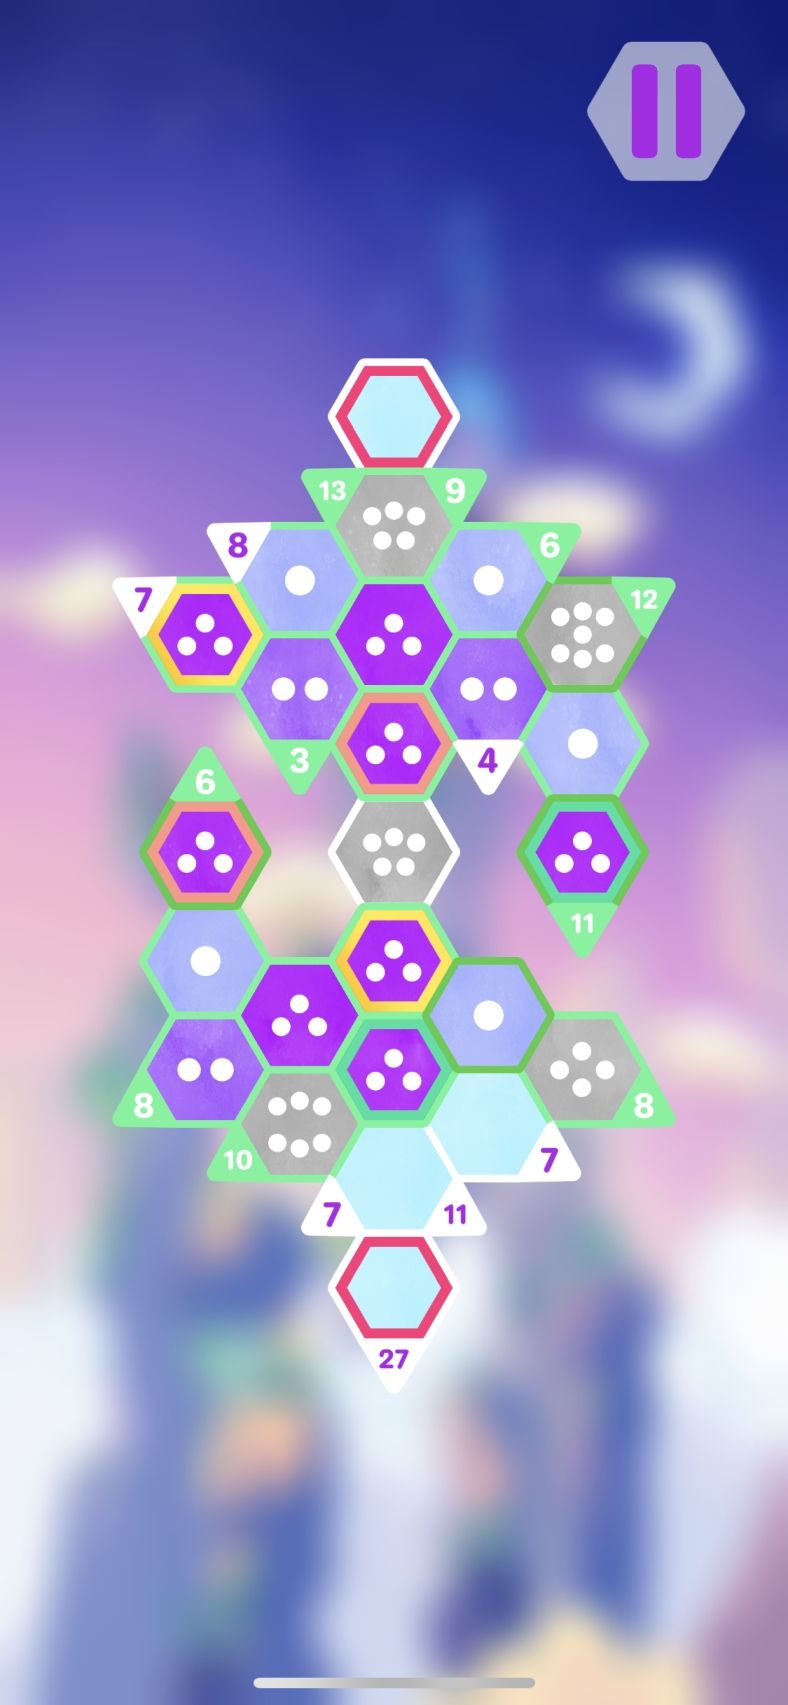 Hexologic - Puzzles divertissants par Sudoku (copie d'écran 11 sur Android)